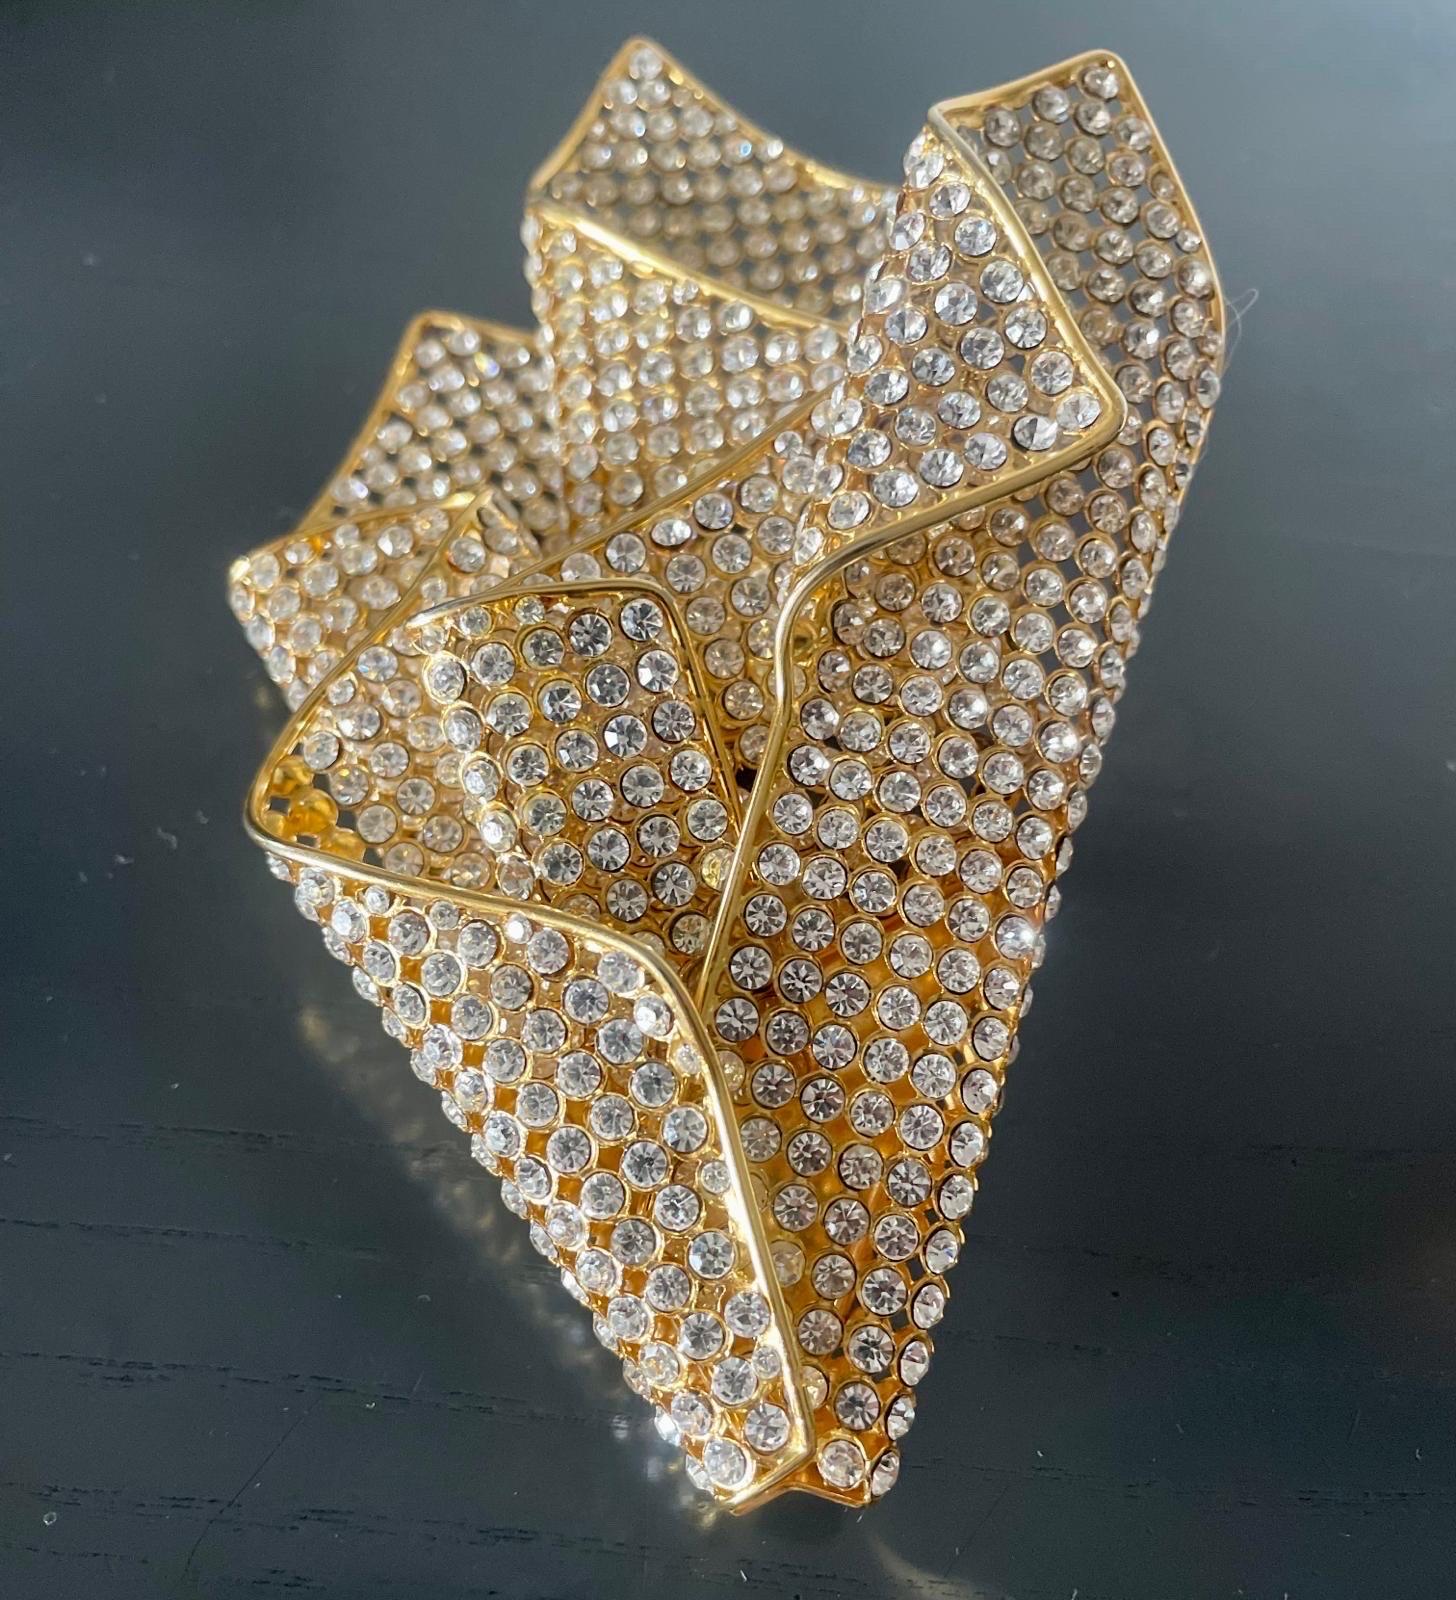 Valentino-Brosche. 1980s. In Form eines Tuches aus goldenem Metall und funkelnden Strasssteinen. 
Abmessungen: 11 cm X 15 cm
Sehr seltenes, sammelwürdiges Accessoire. Wie neu, ausgezeichneter Zustand.